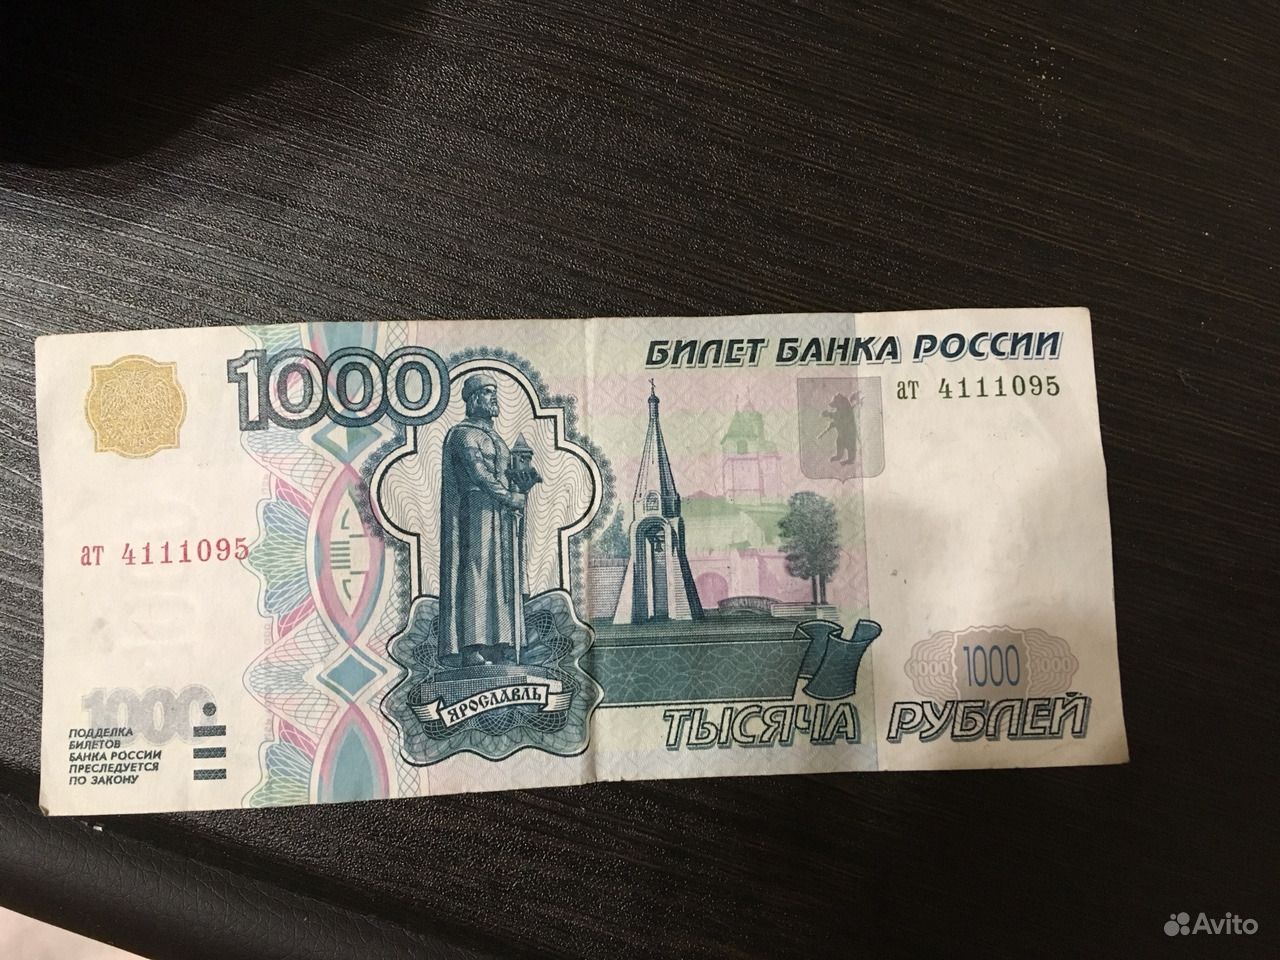 Го 1000 рублей. Купюра 1000 рублей. Банкнота 1000 рублей. Купюра 1 тысяча. Тысячная купюра.